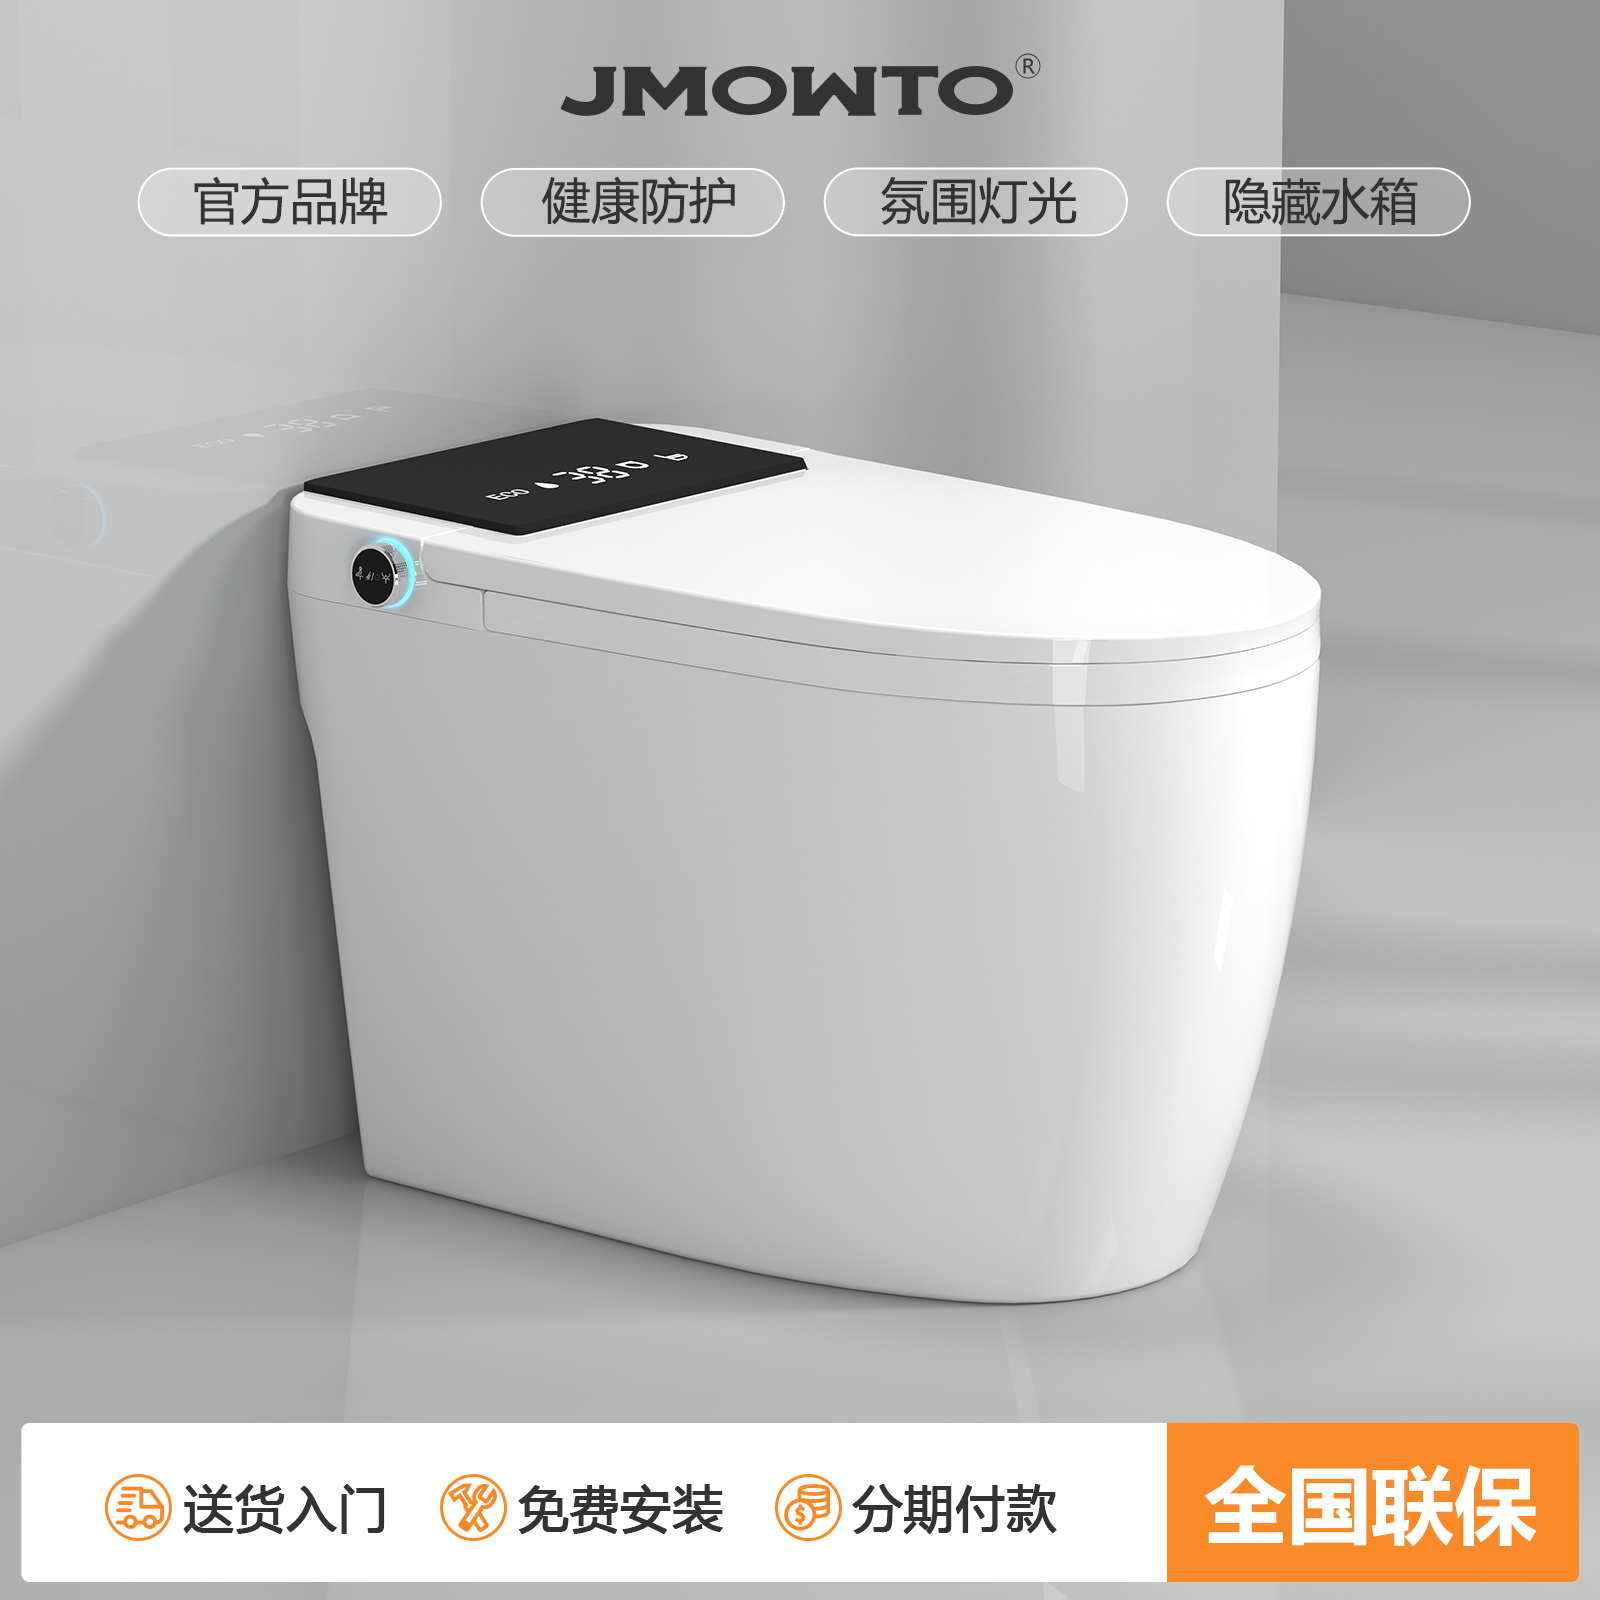 JMOWTO家用轻智能马桶多功能全自动防臭杀菌即热一体虹吸式座便器